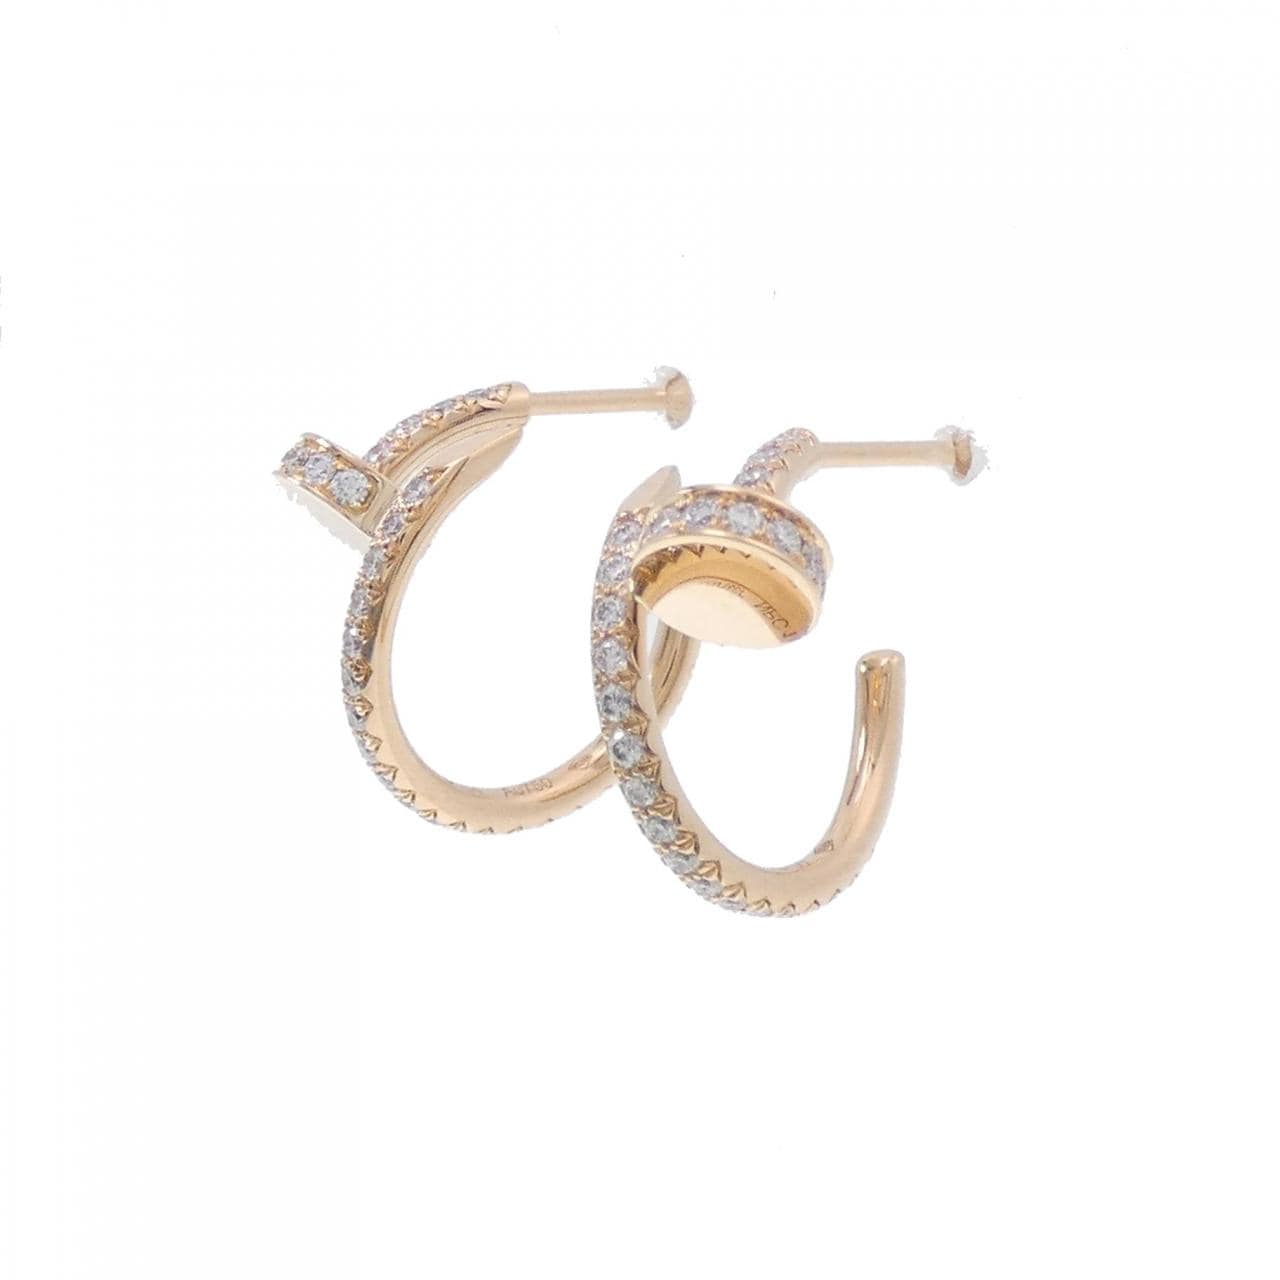 Cartier Juste Un Clou earrings